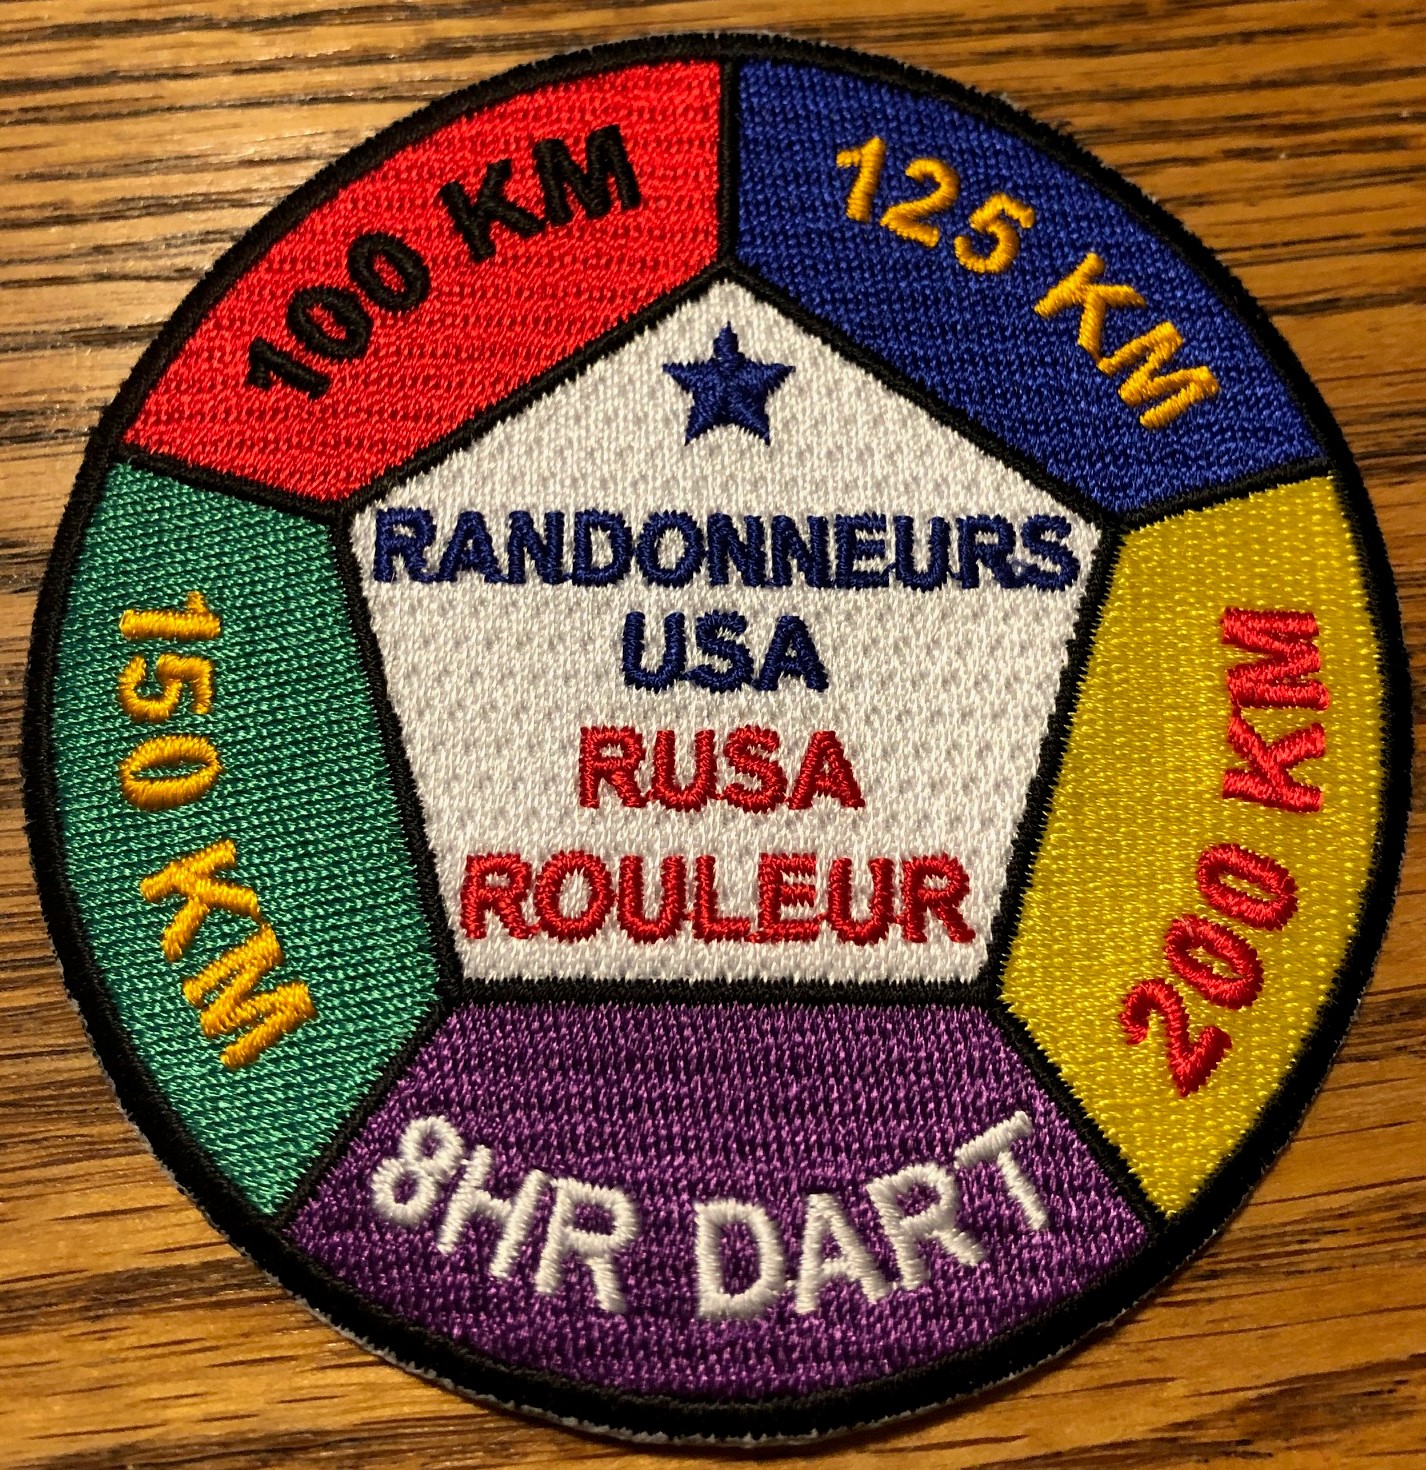 Rouleur Award patch